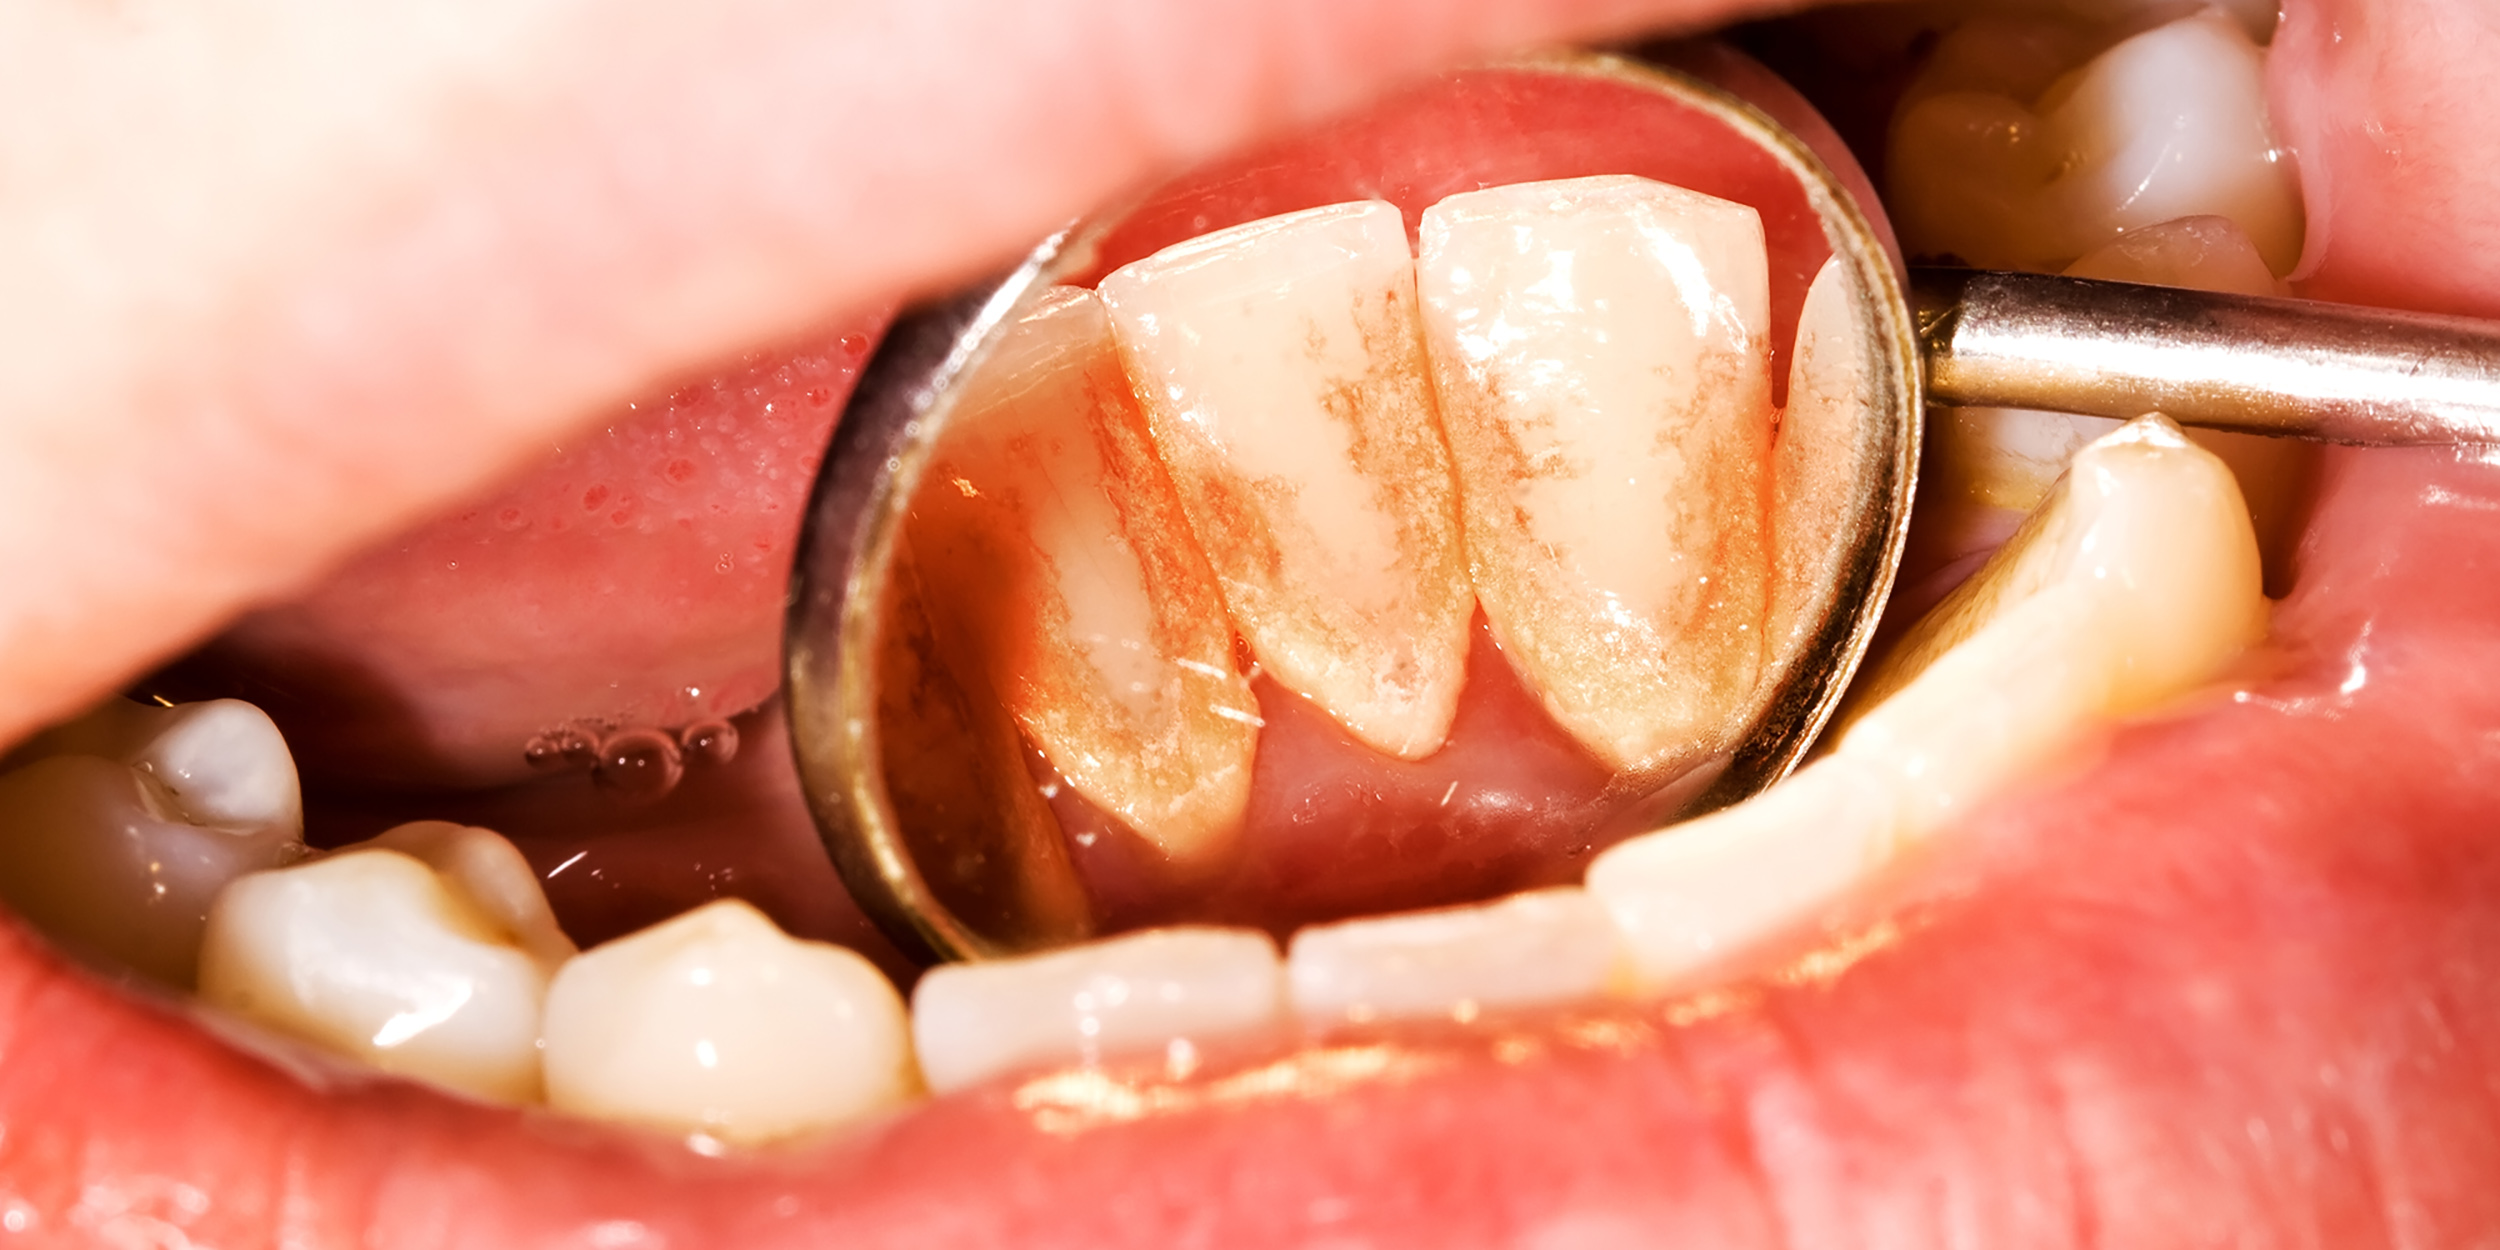 Heeft voeding invloed op de vorming van tandsteen?